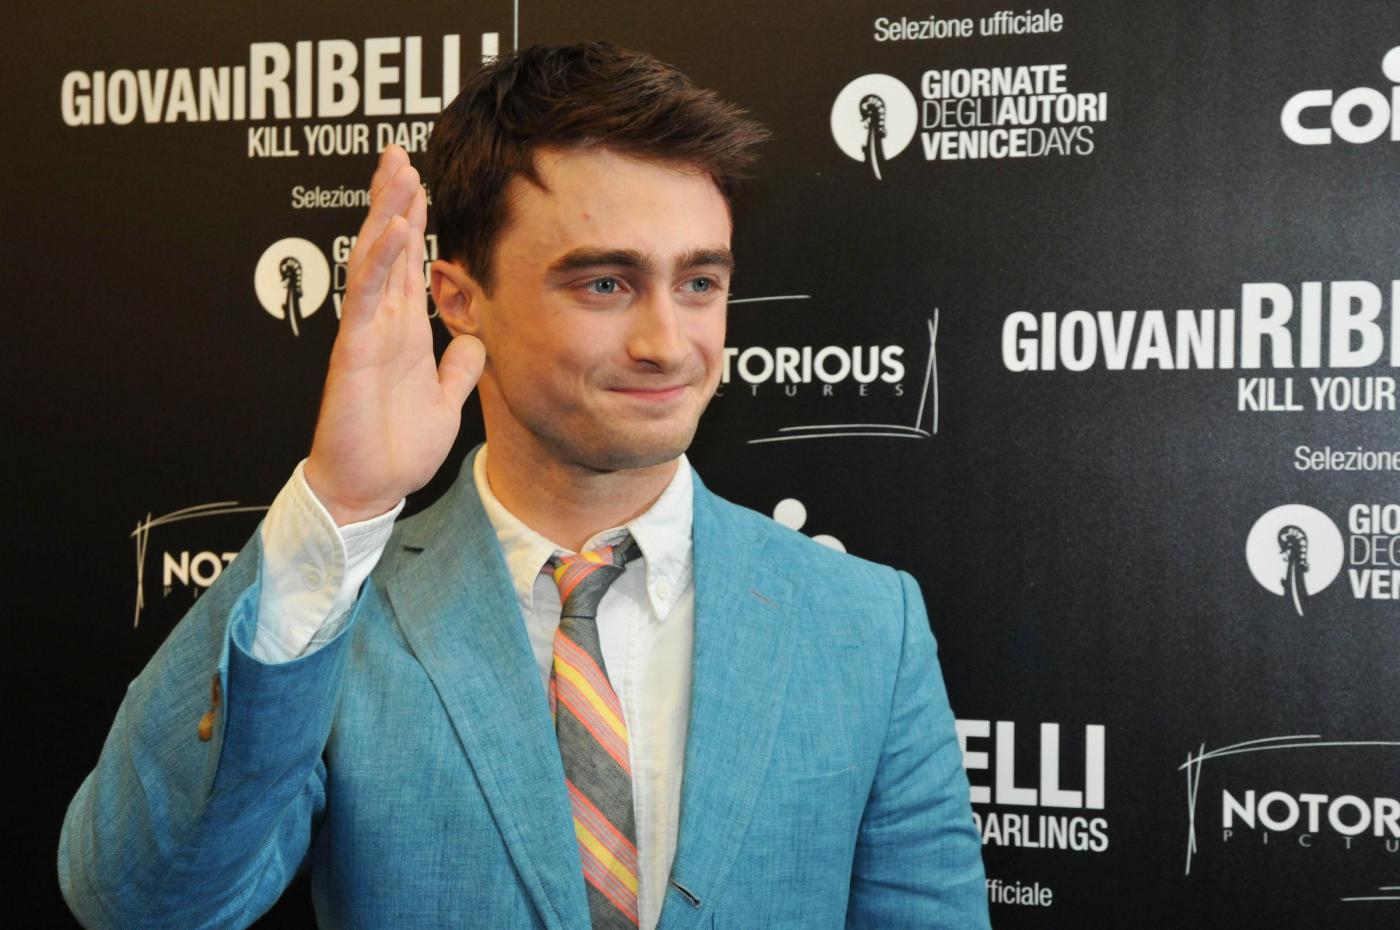 Daniel Radcliffe, l'ex Harry Potter sbanca Venezia03